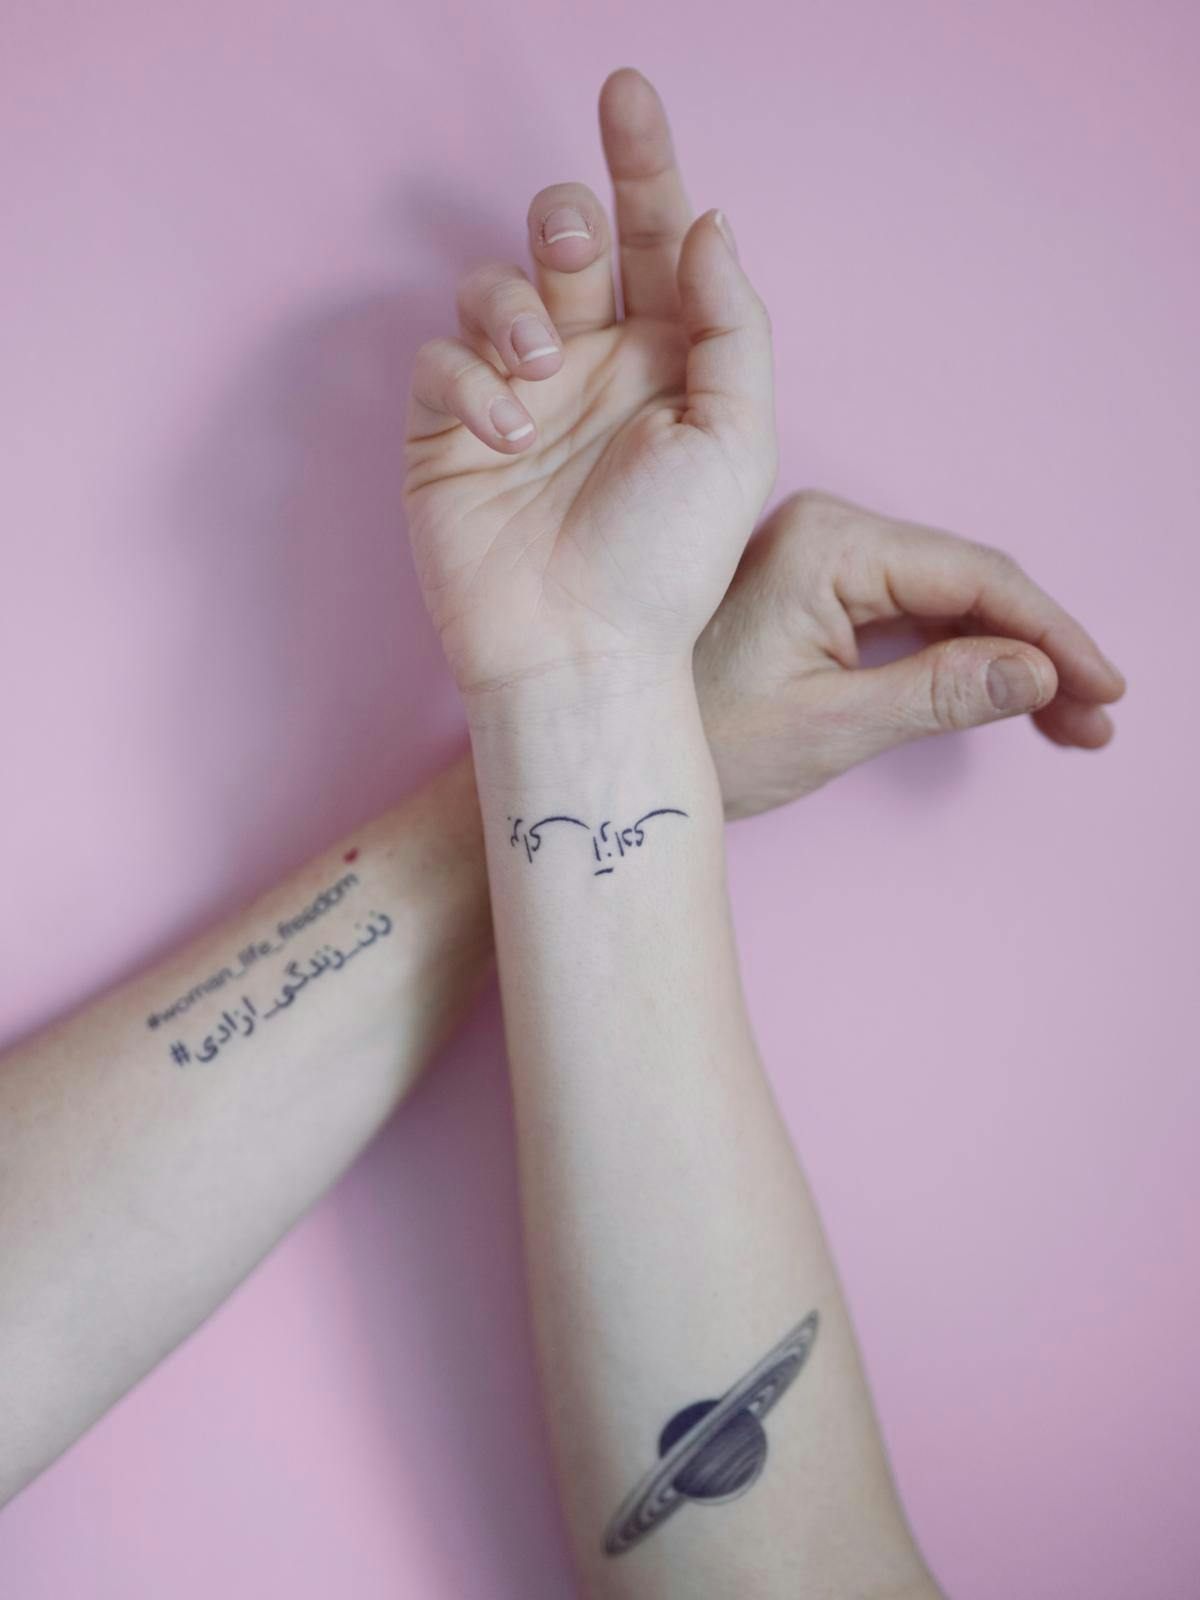 Marjan og Neda har sammen fået lavet tatoveringer, der minder dem om den iranske kamp. På Marjans arm står der ”women, life, freedom” og på Nedas ”for frihed”. ”Denne her bevægelse skal være på min krop, så jeg aldrig nogensinde glemmer den," siger M